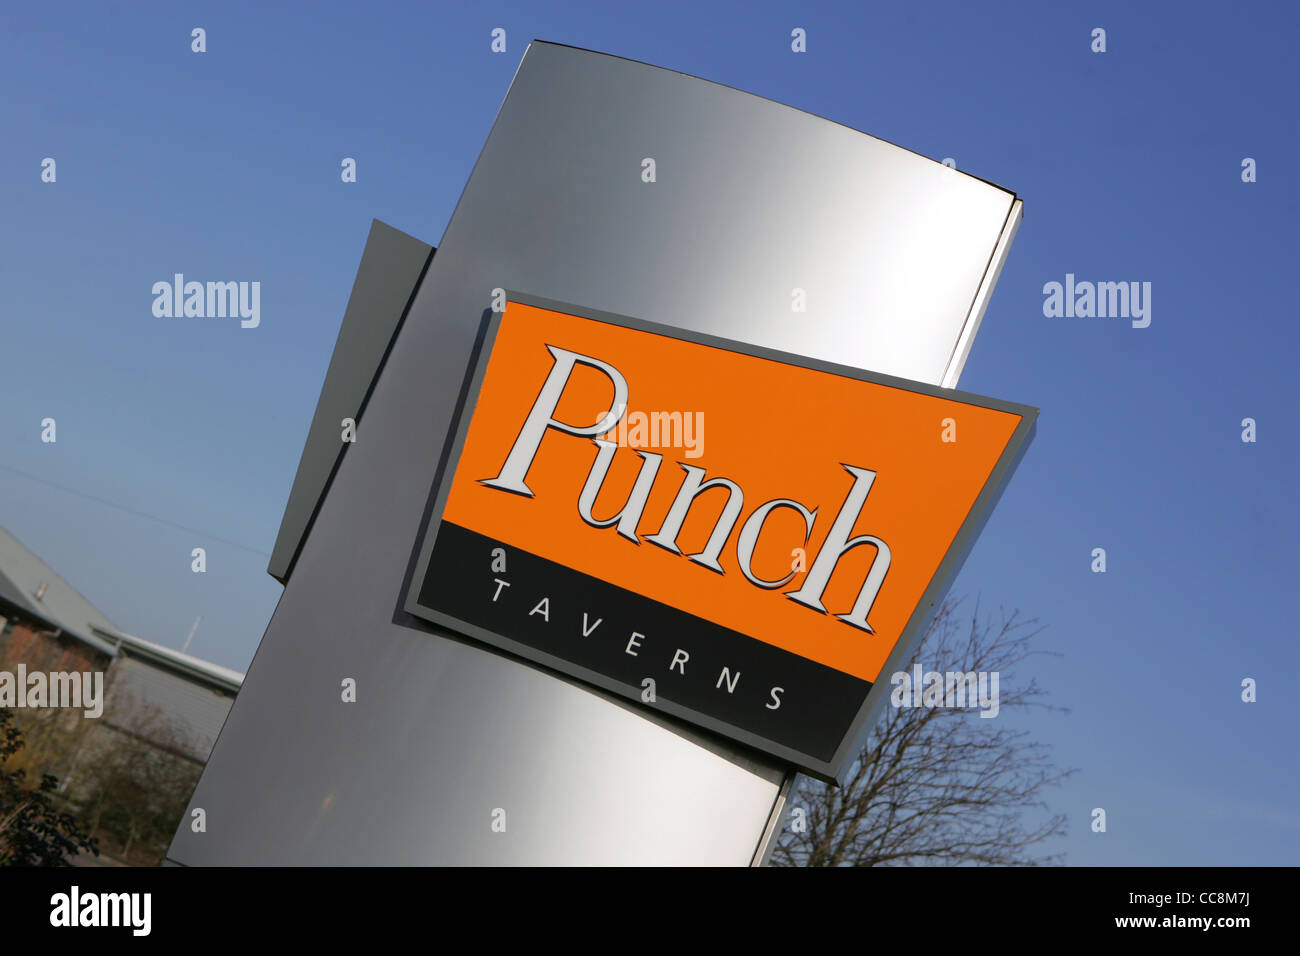 Punch Taverns Hauptsitz, Jubilee House, Burton On Trent 2012 Stockfoto